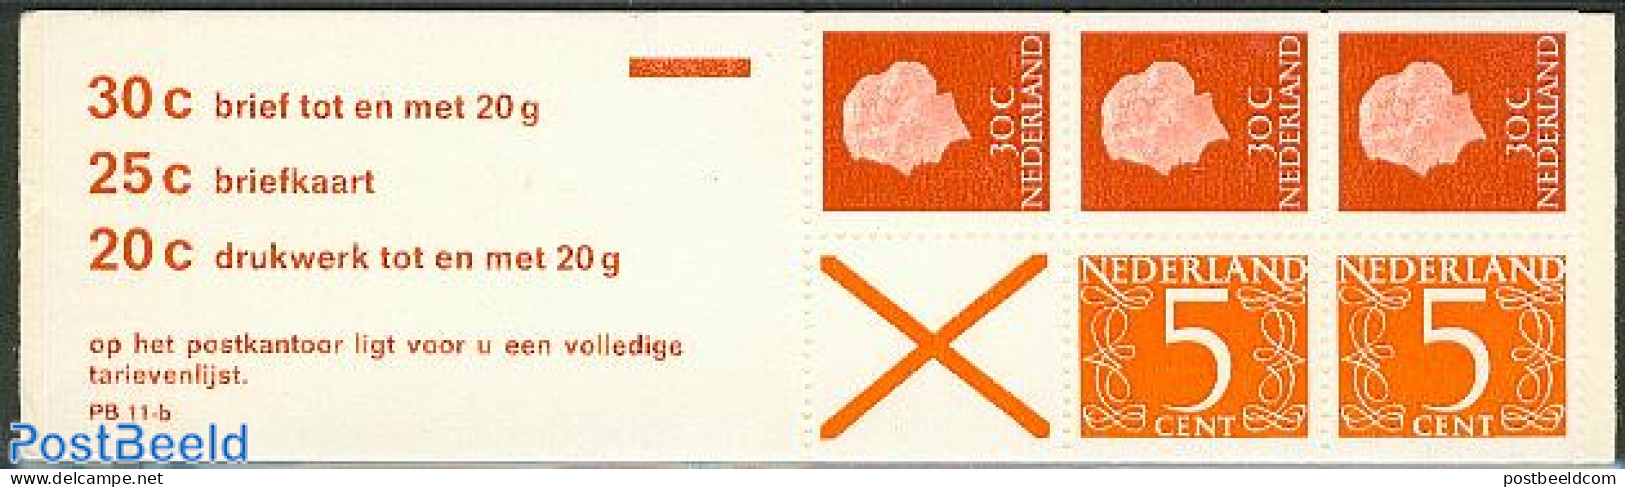 Netherlands 1971 2x5, 3x30c Booklet, Text: 30c Brief Tot En Met 20, Mint NH, Stamp Booklets - Ongebruikt